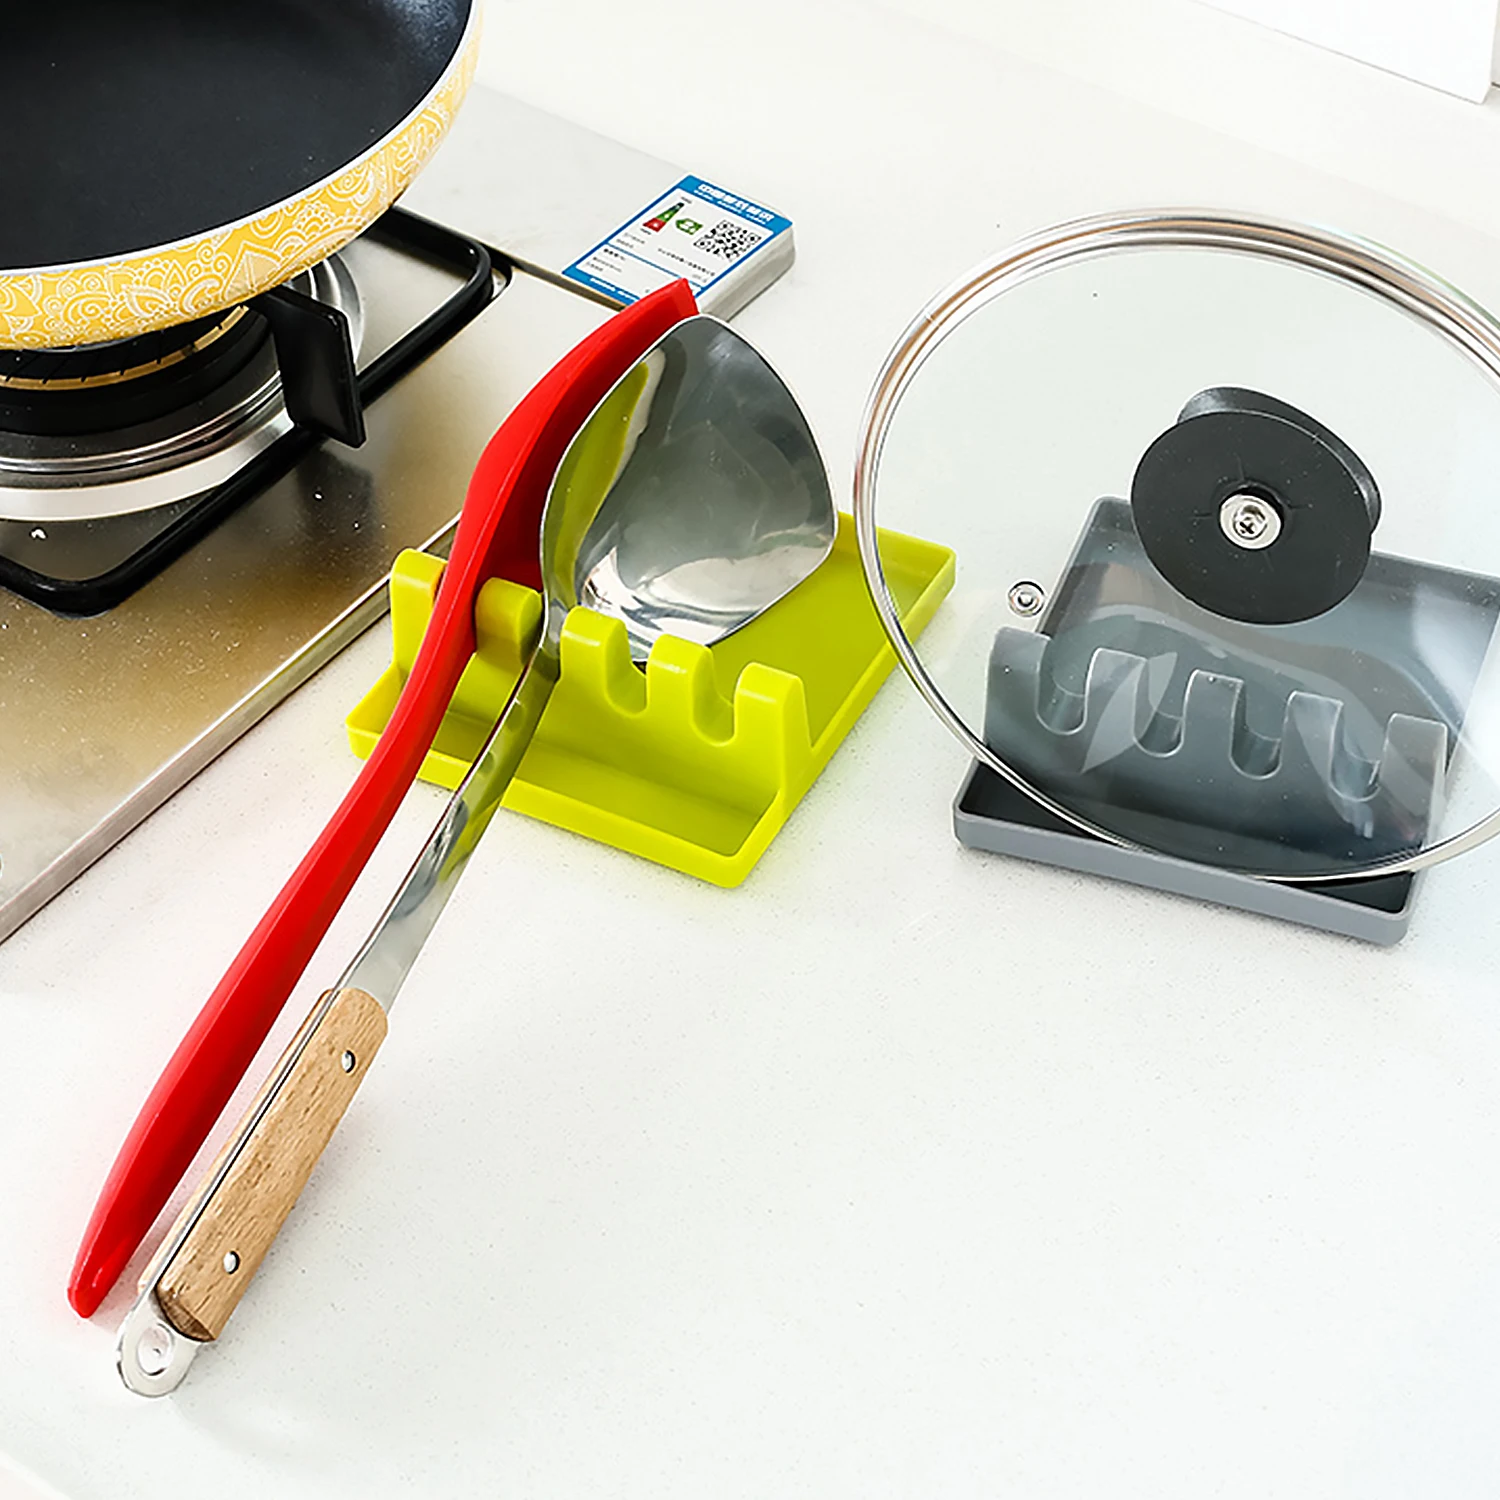 Behogar Многофункциональный практичный горшок ложка шпатель подставка вешалка для хранения Органайзер для домашний кухонный инструмент